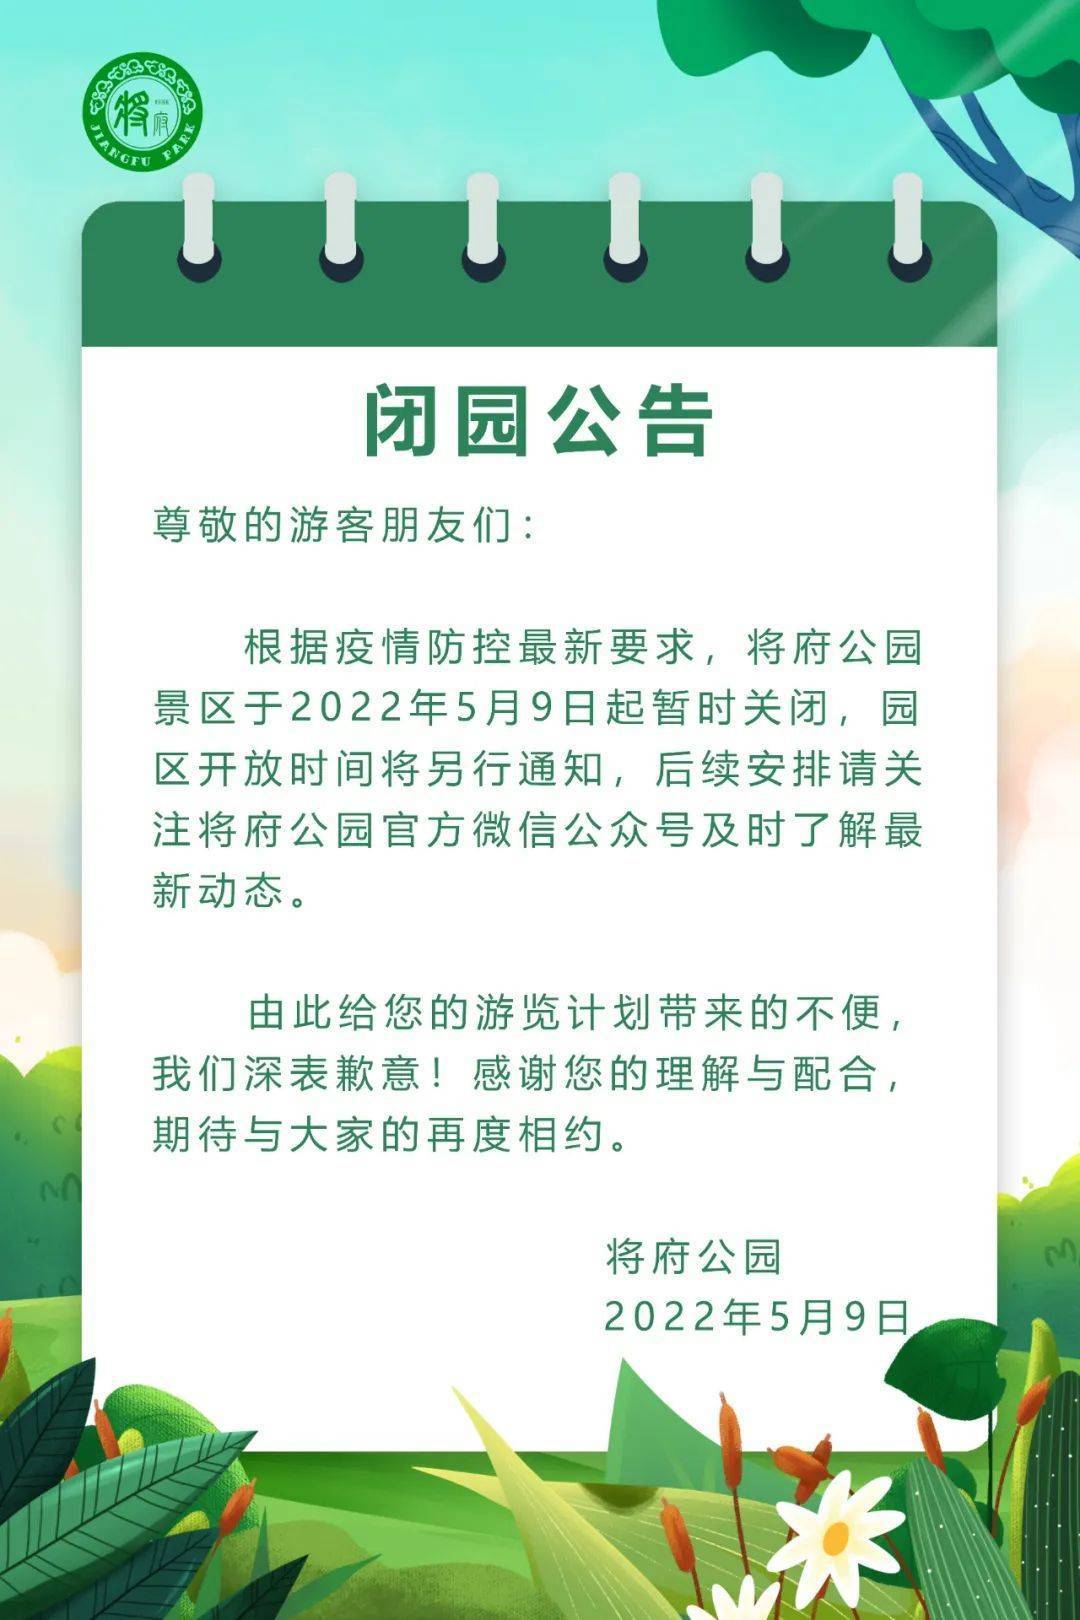 北京将府公园：根据疫情防控最新要求，景区于5月9日起暂时关闭